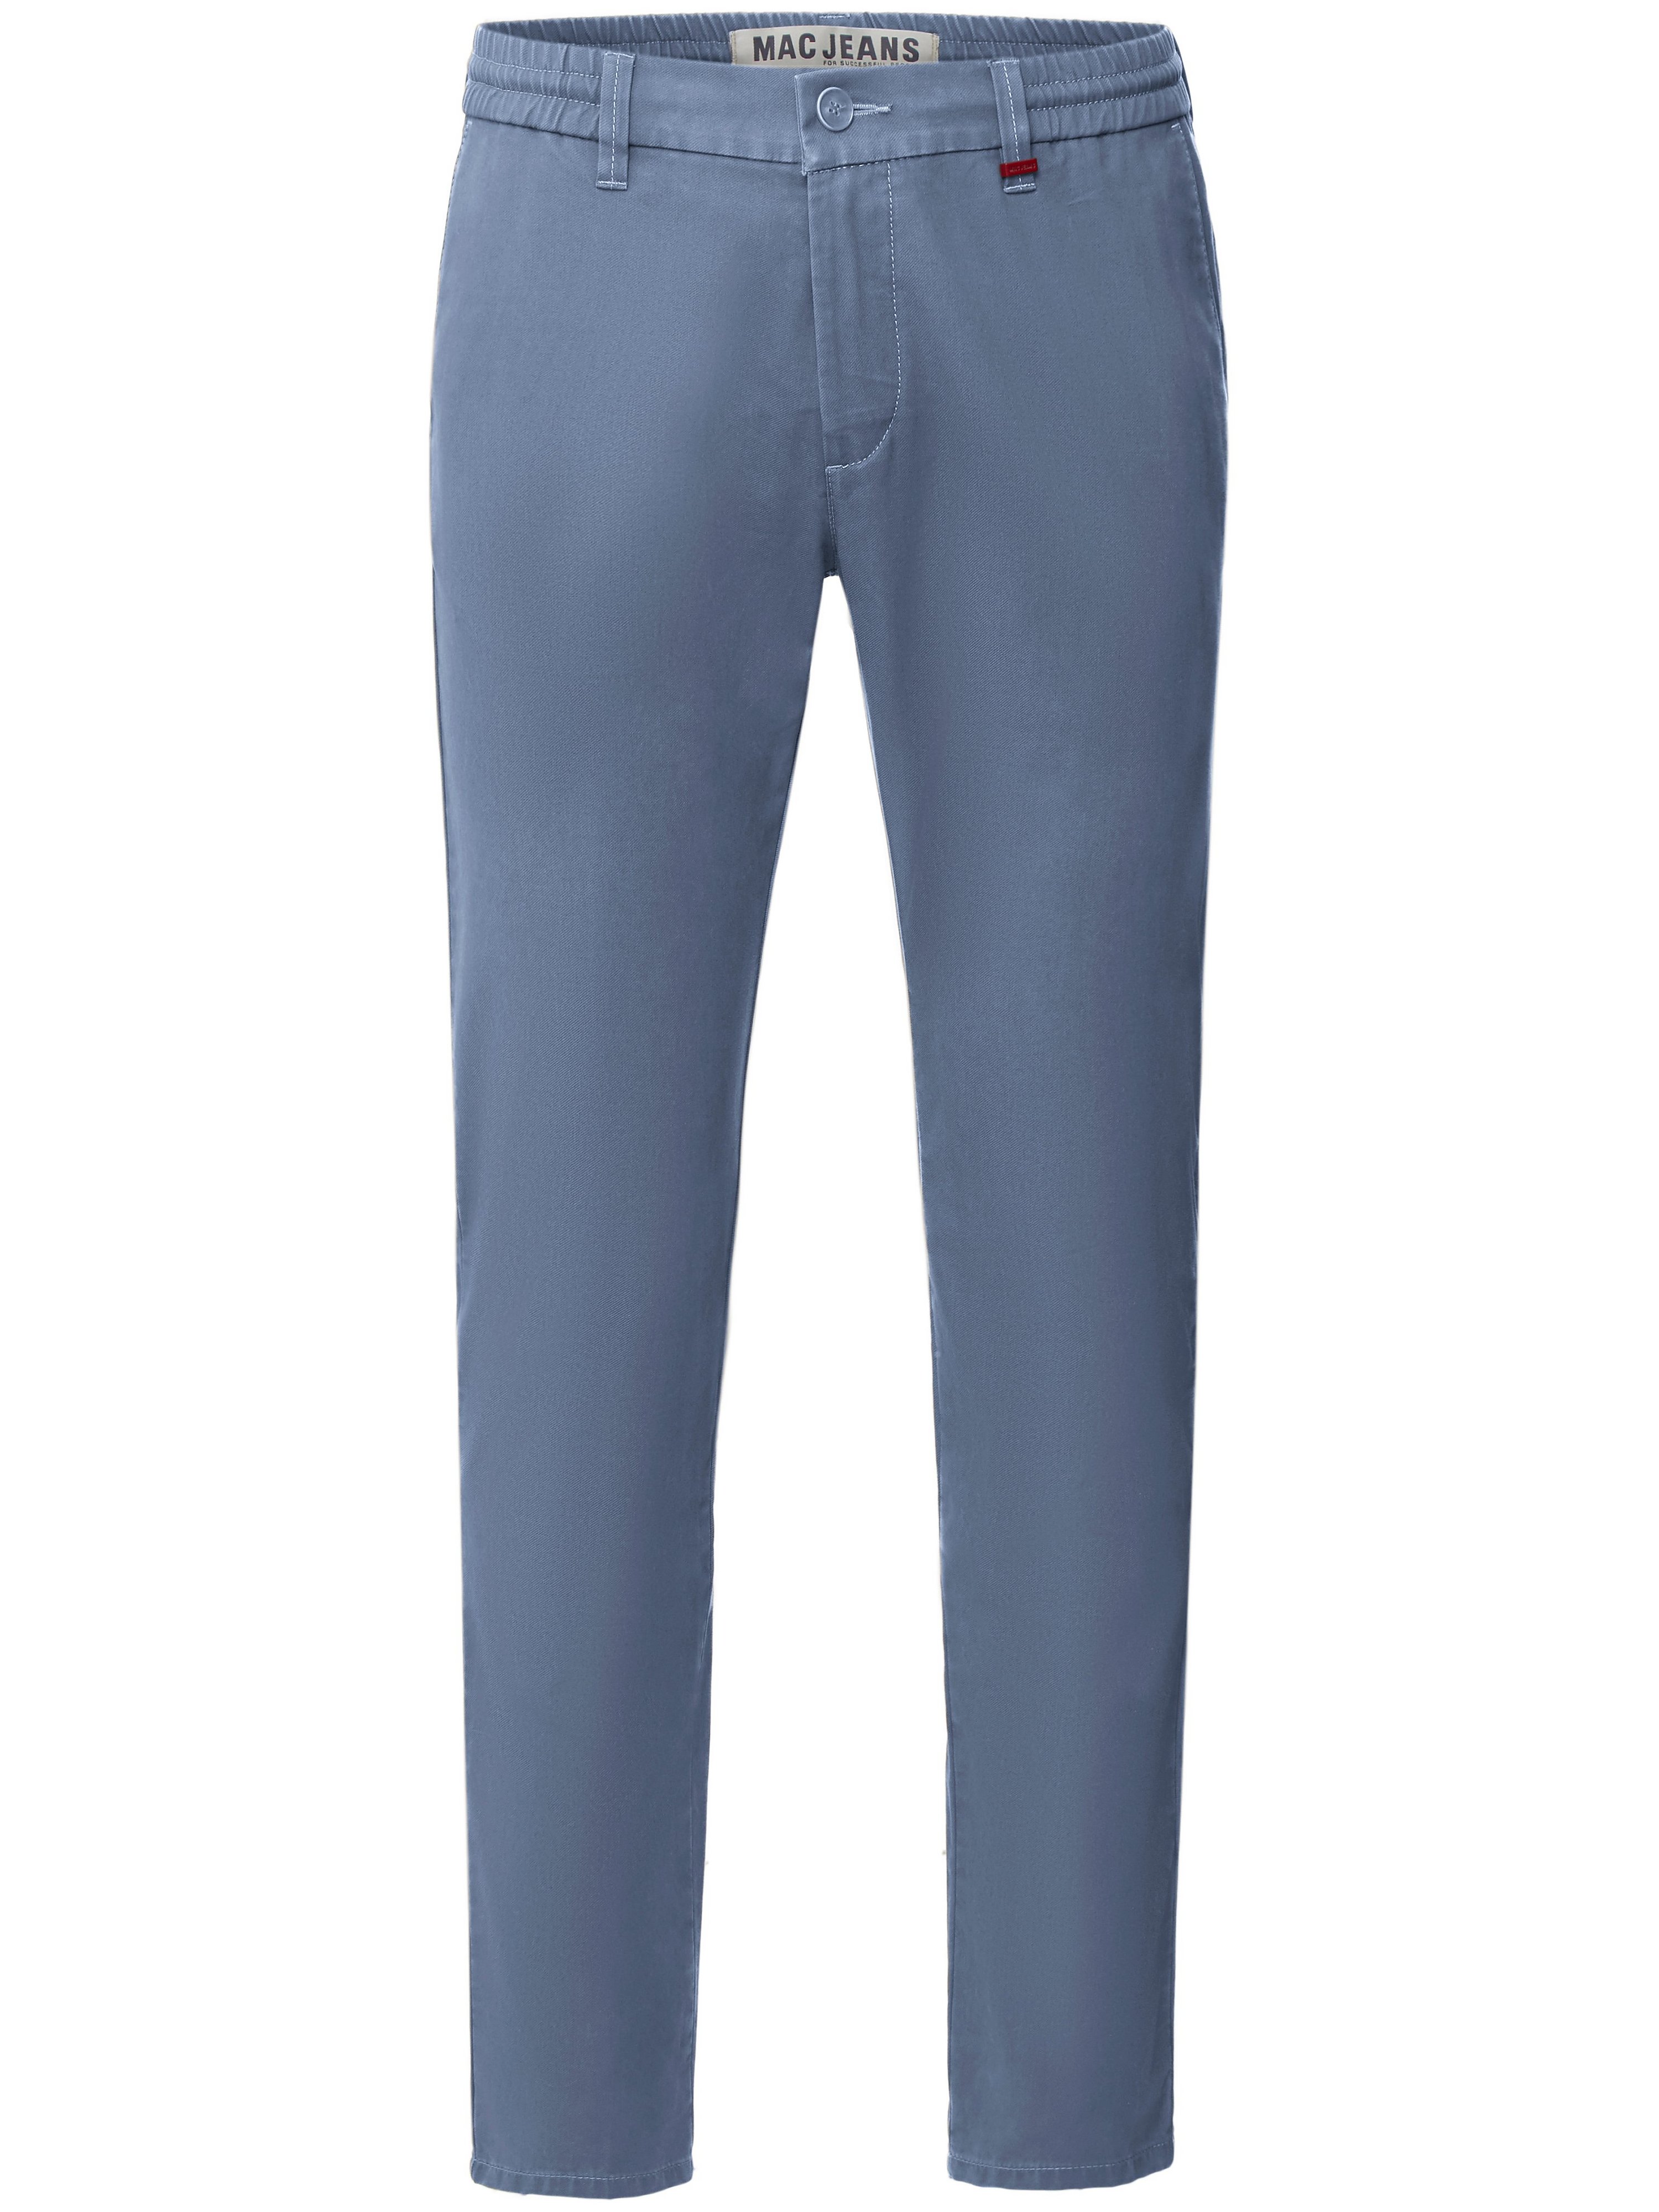 Le pantalon Modern Fit modèle Lennox Sport  Mac bleu taille 35